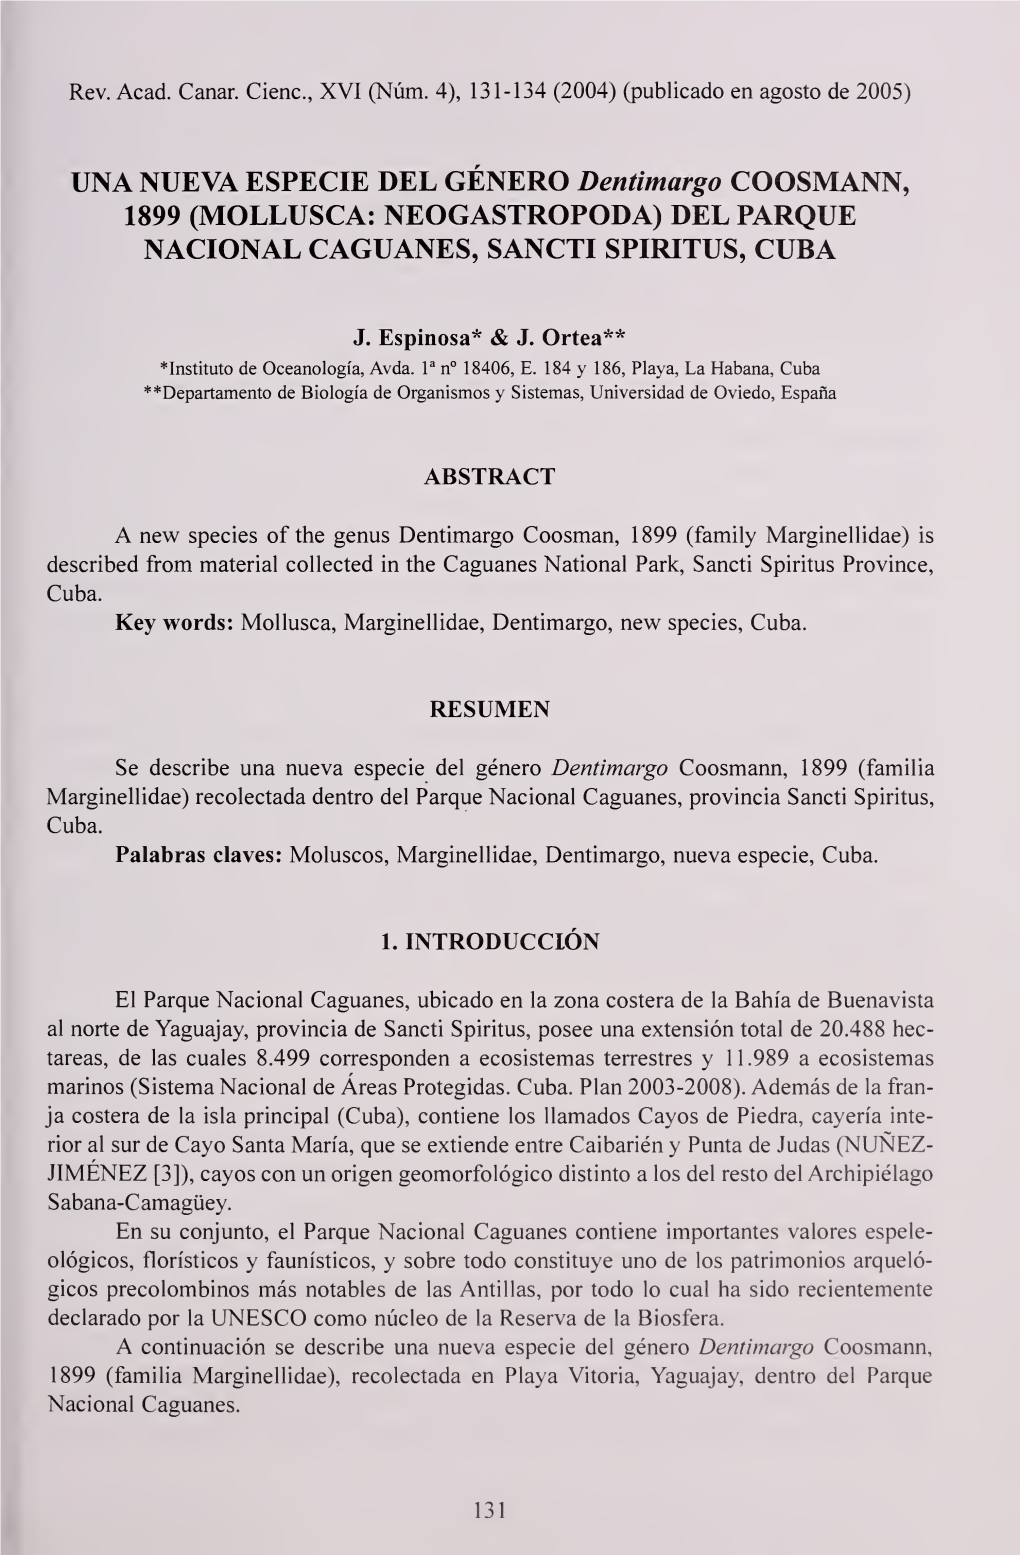 Una Nueva Especie Del Género Dentimargo Coosmann, 1899 (Mollusca: Neogastropoda) Del Parque Nacional Caguanes, Sancti Spiritus